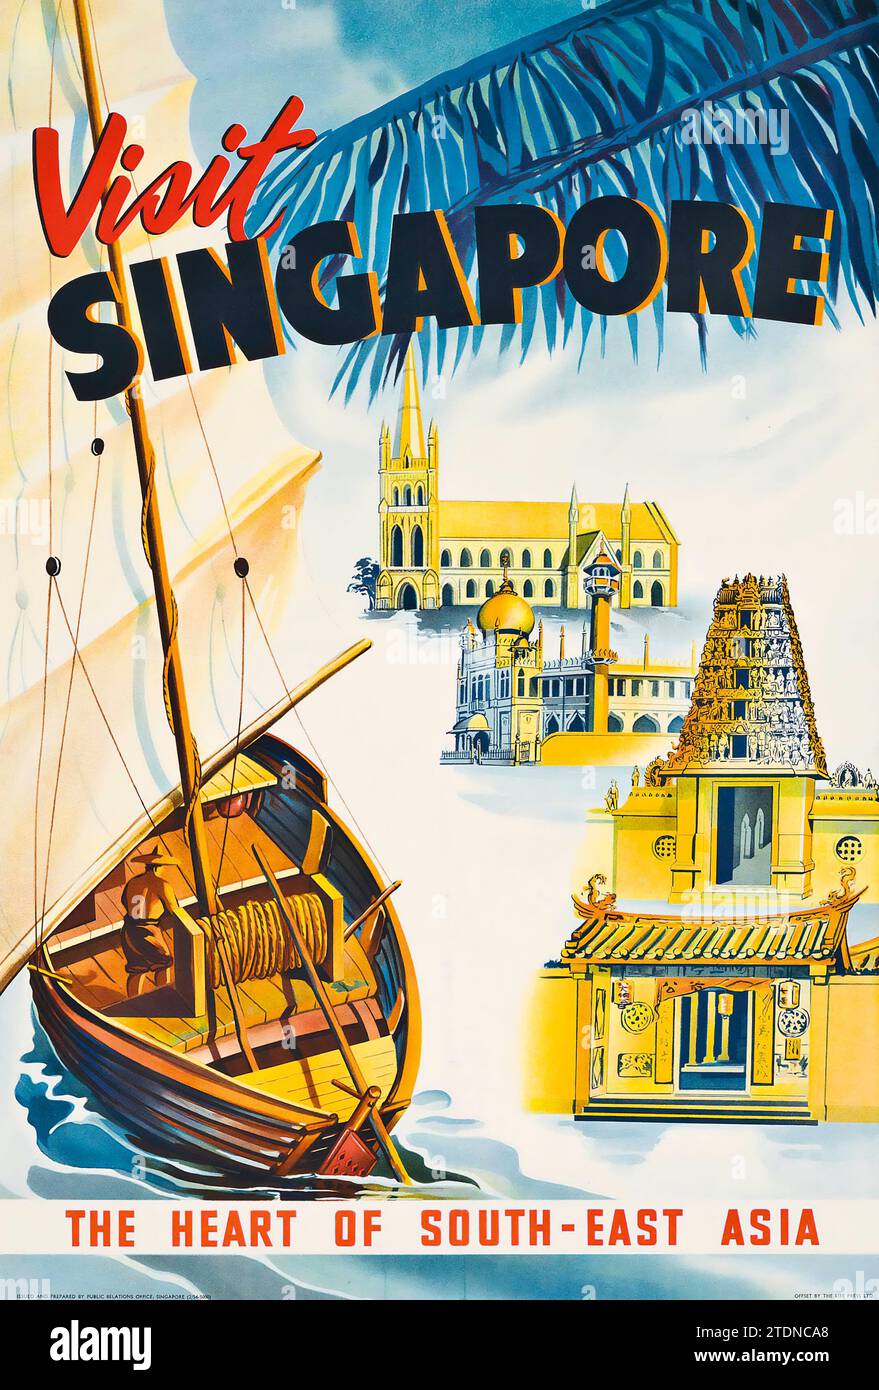 VISITEZ SINGAPOUR - le cœur de l'Asie du Sud-est - affiche de voyage vintage, 1954 Banque D'Images